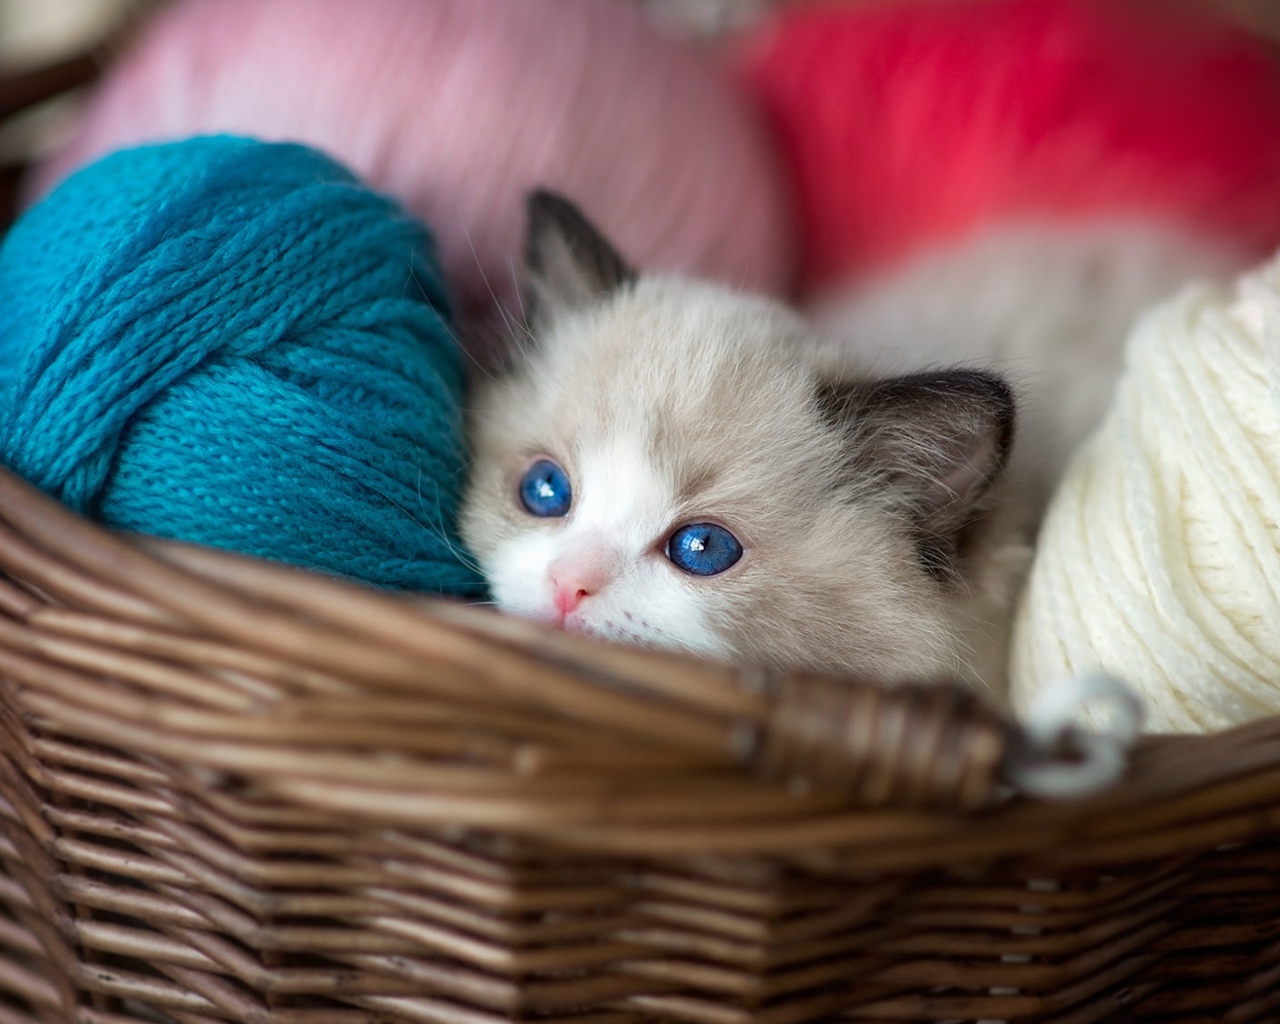 Little blue-eyed kitten in a basket with yarn